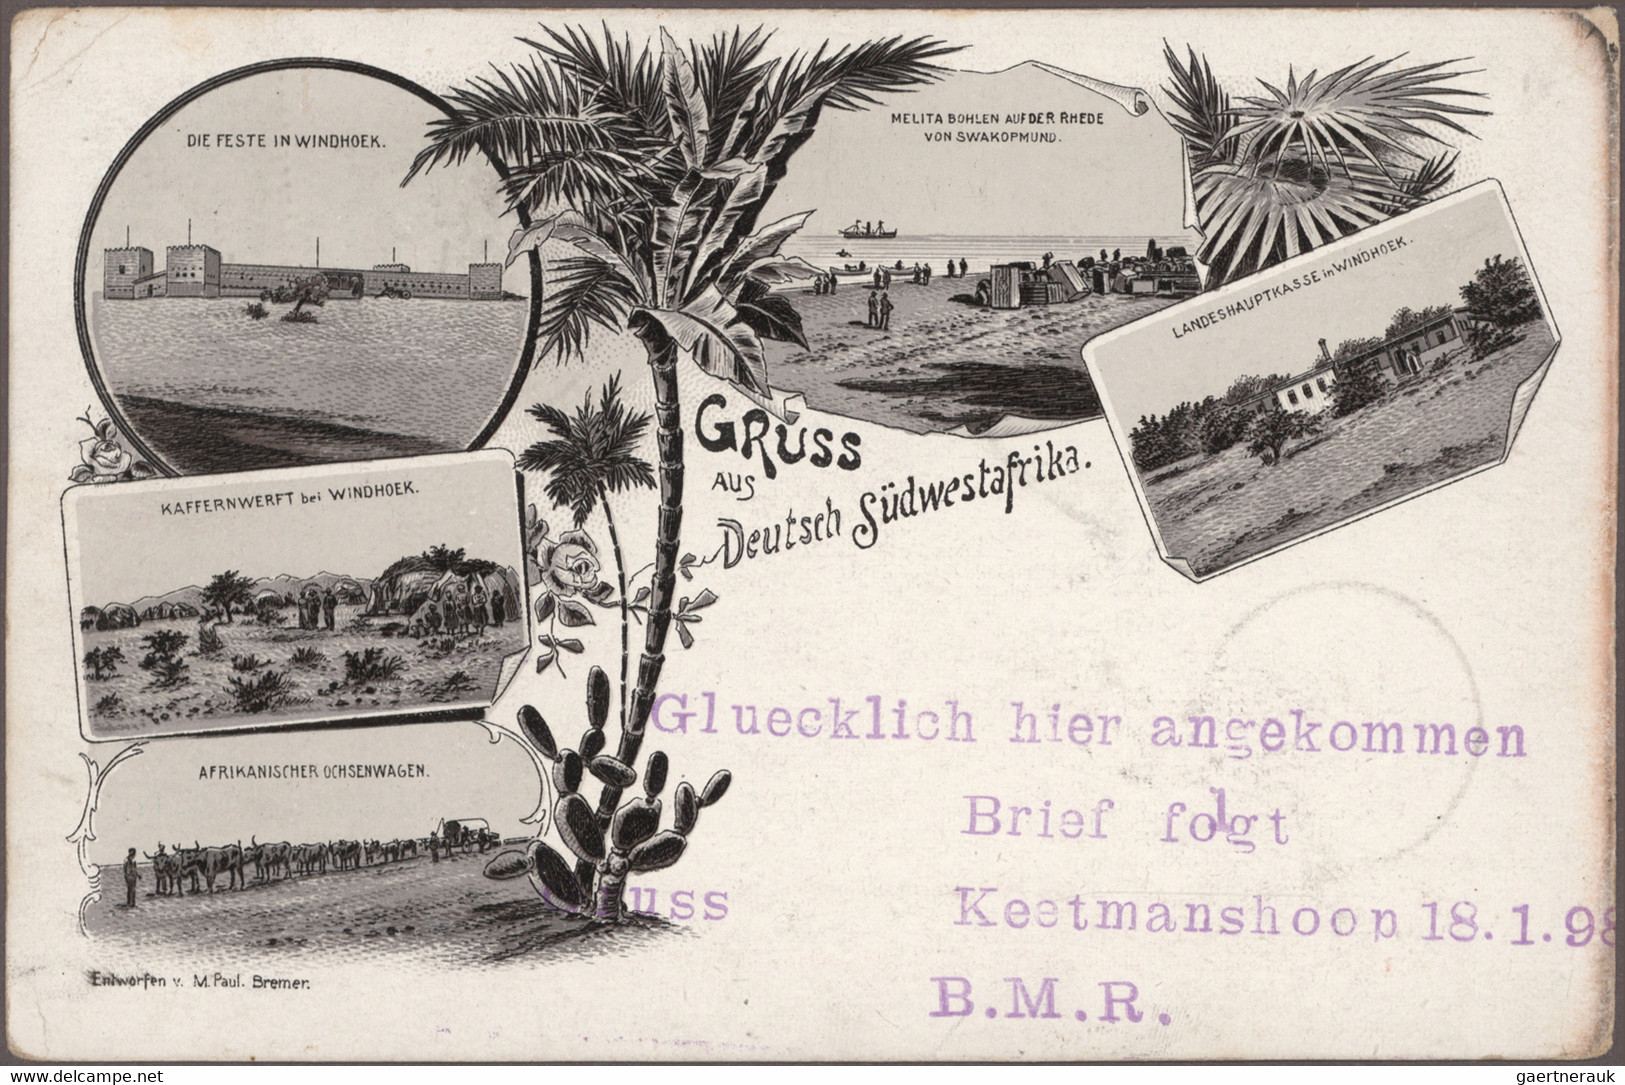 Deutsch-Südwestafrika: 1898/1913, vielseitige Sammlung von 41 gebrauchten Ansich